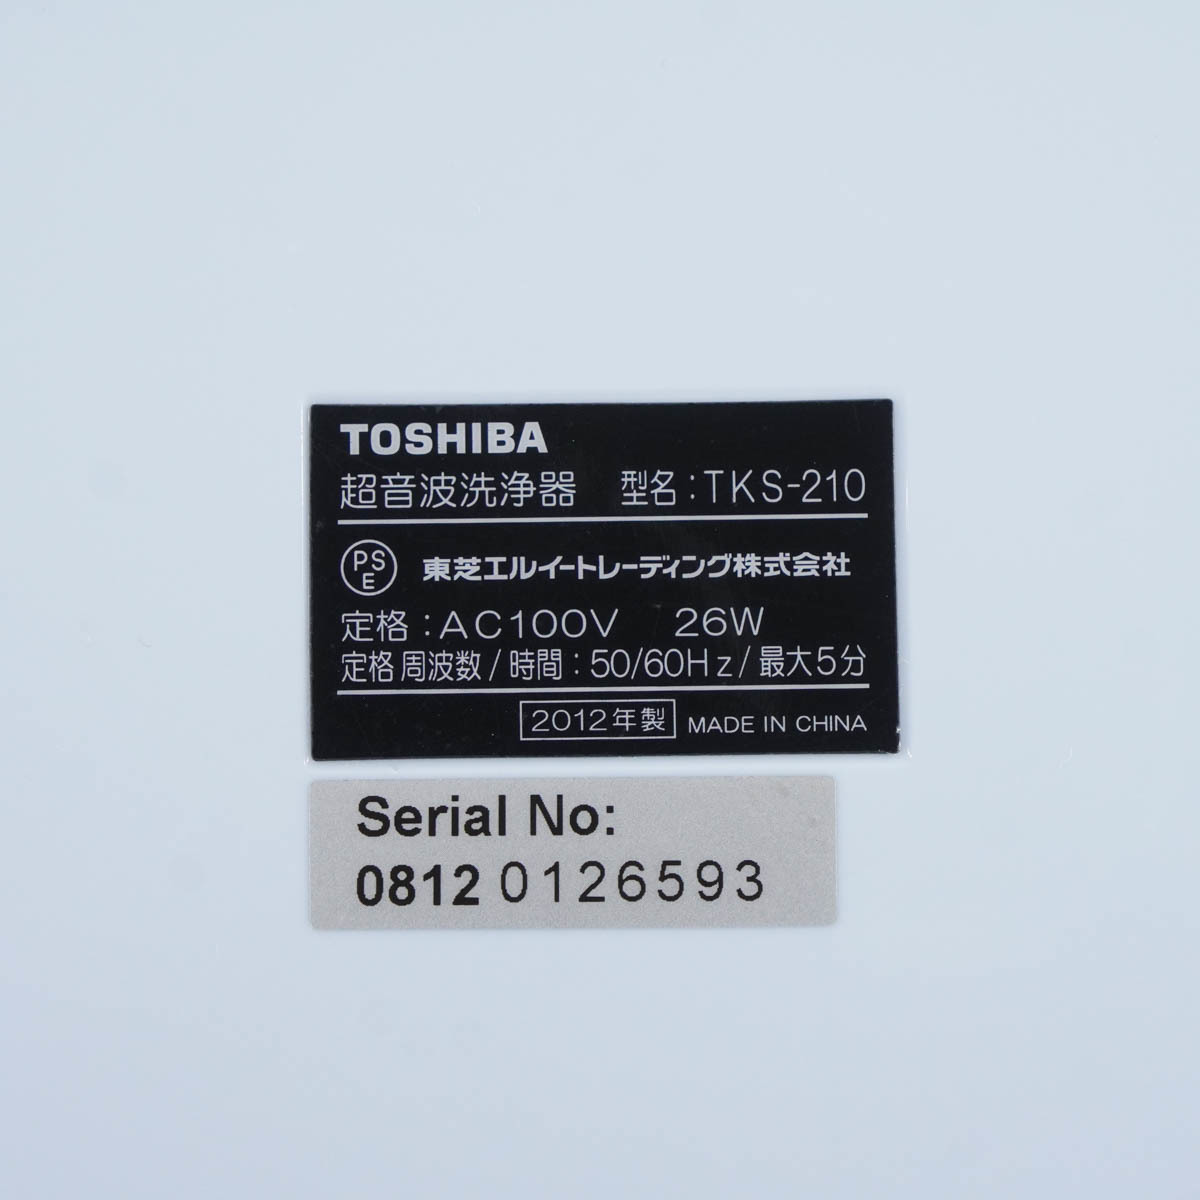 [PG] 8日保証 2012年製 TKS-210 TOSHIBA 50/60Hz 東芝 超音波洗浄器 家庭用 Ultrasonic Cleaner 取扱説明書[05588-0002]_画像9